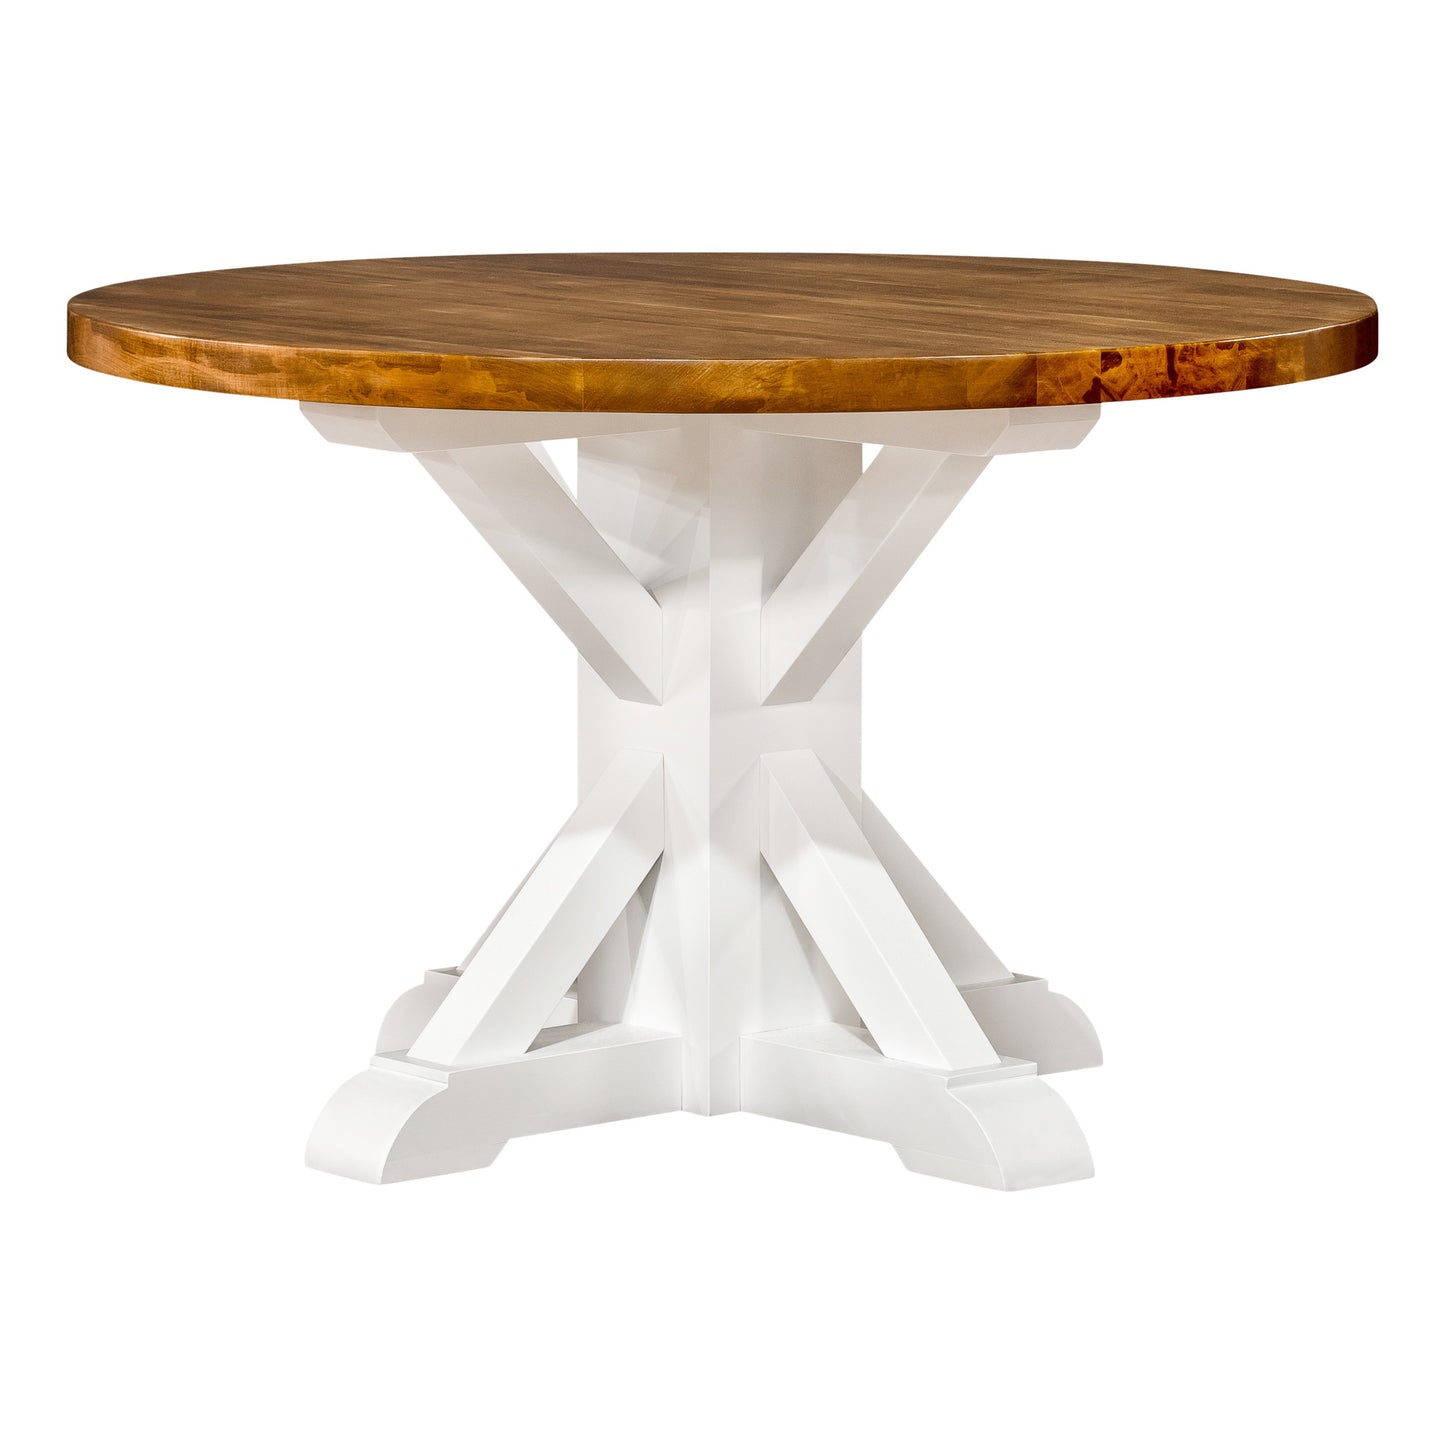 Cache Bay 48" Pedestal Table